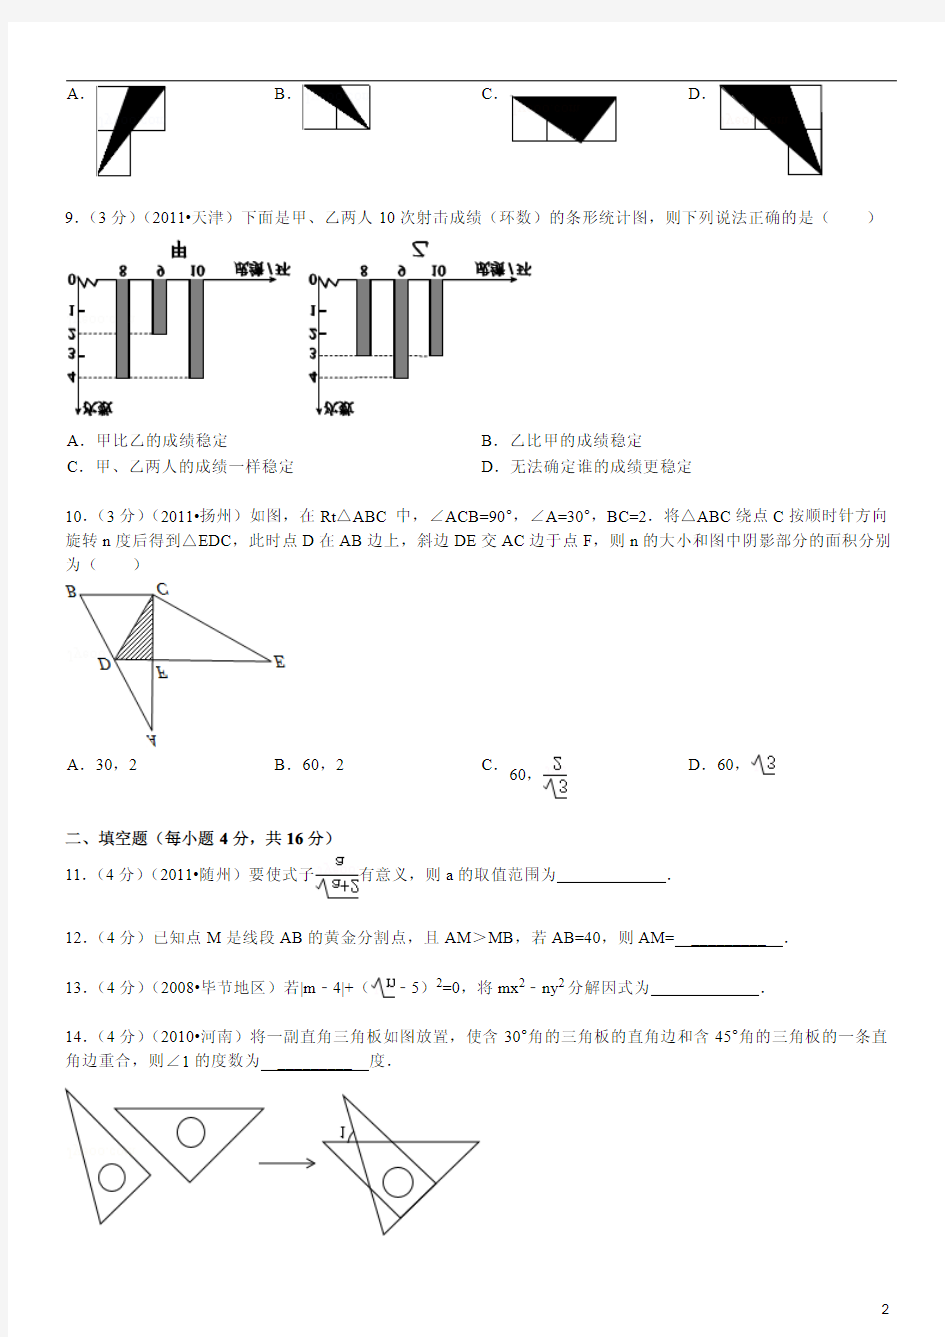 2012-2013学年四川省成都市铁路中学九年级(上)入学考试数学试卷